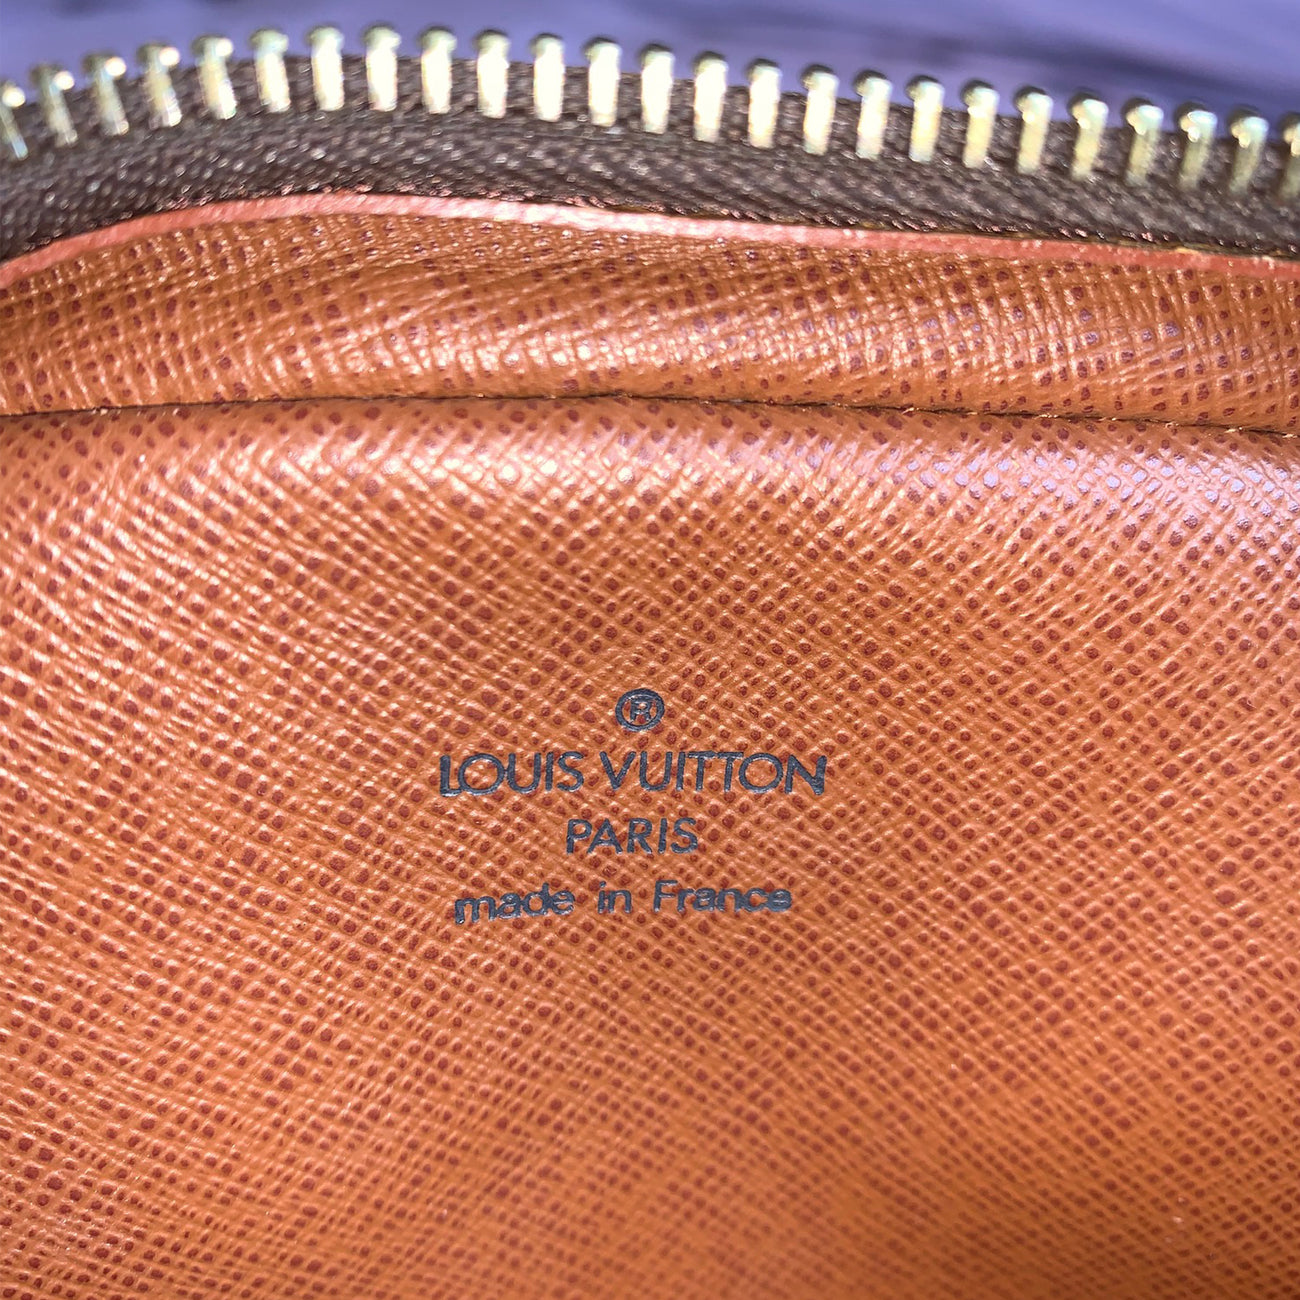 Louis Vuitton Loop Bag @louisvuitton #louisvuitton #loopbag